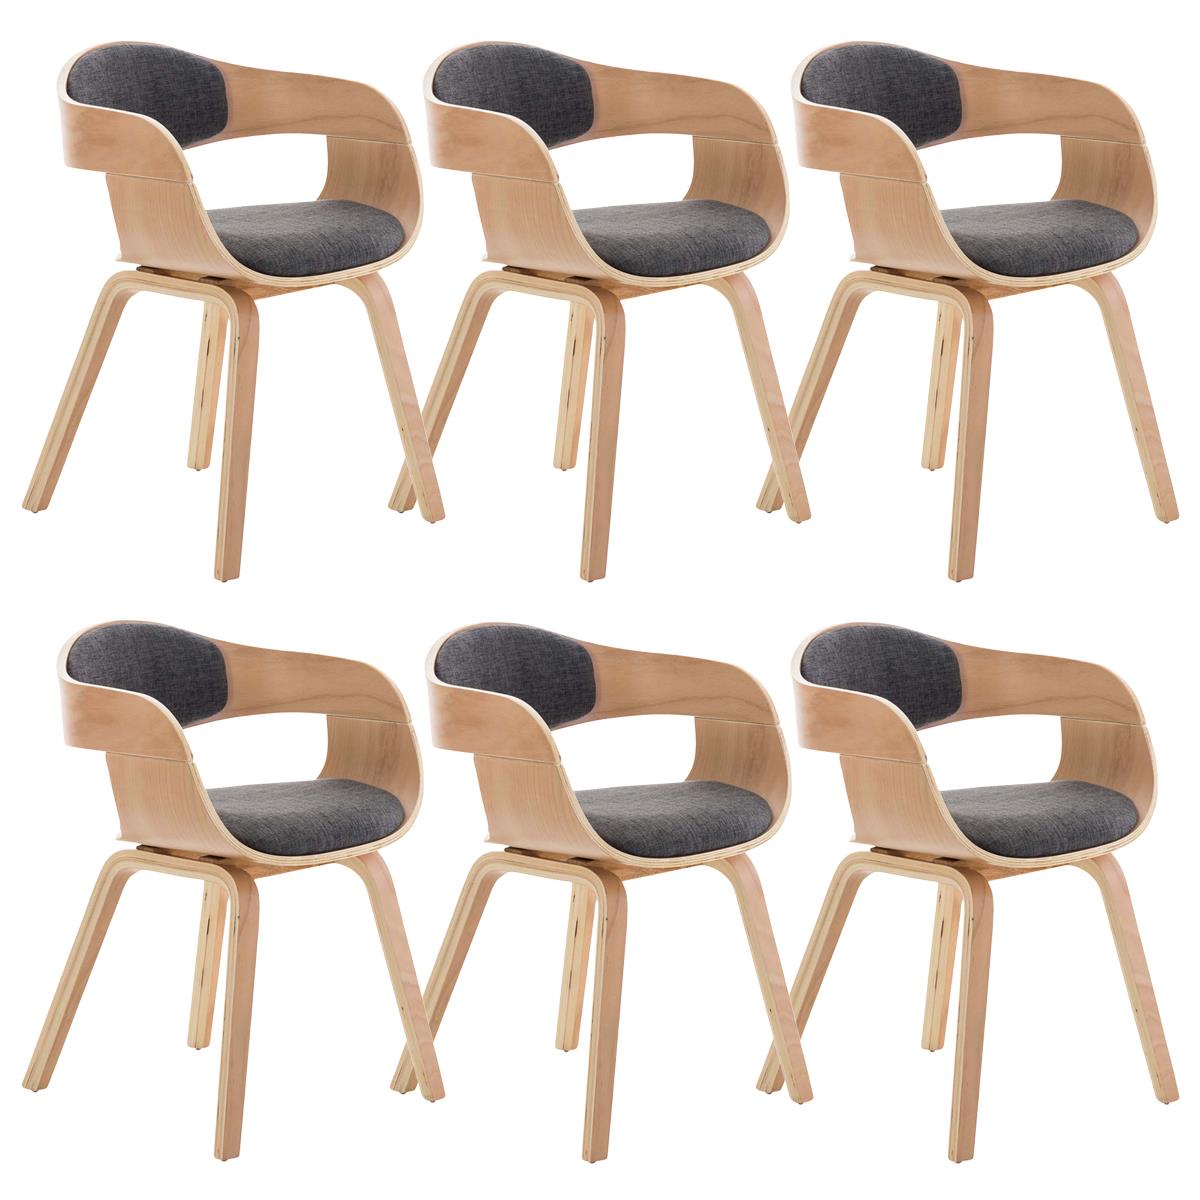 Lote de 6 sillas de Comedor BOLONIA, en Tela Gris Claro, Estructura de Madera color Natural